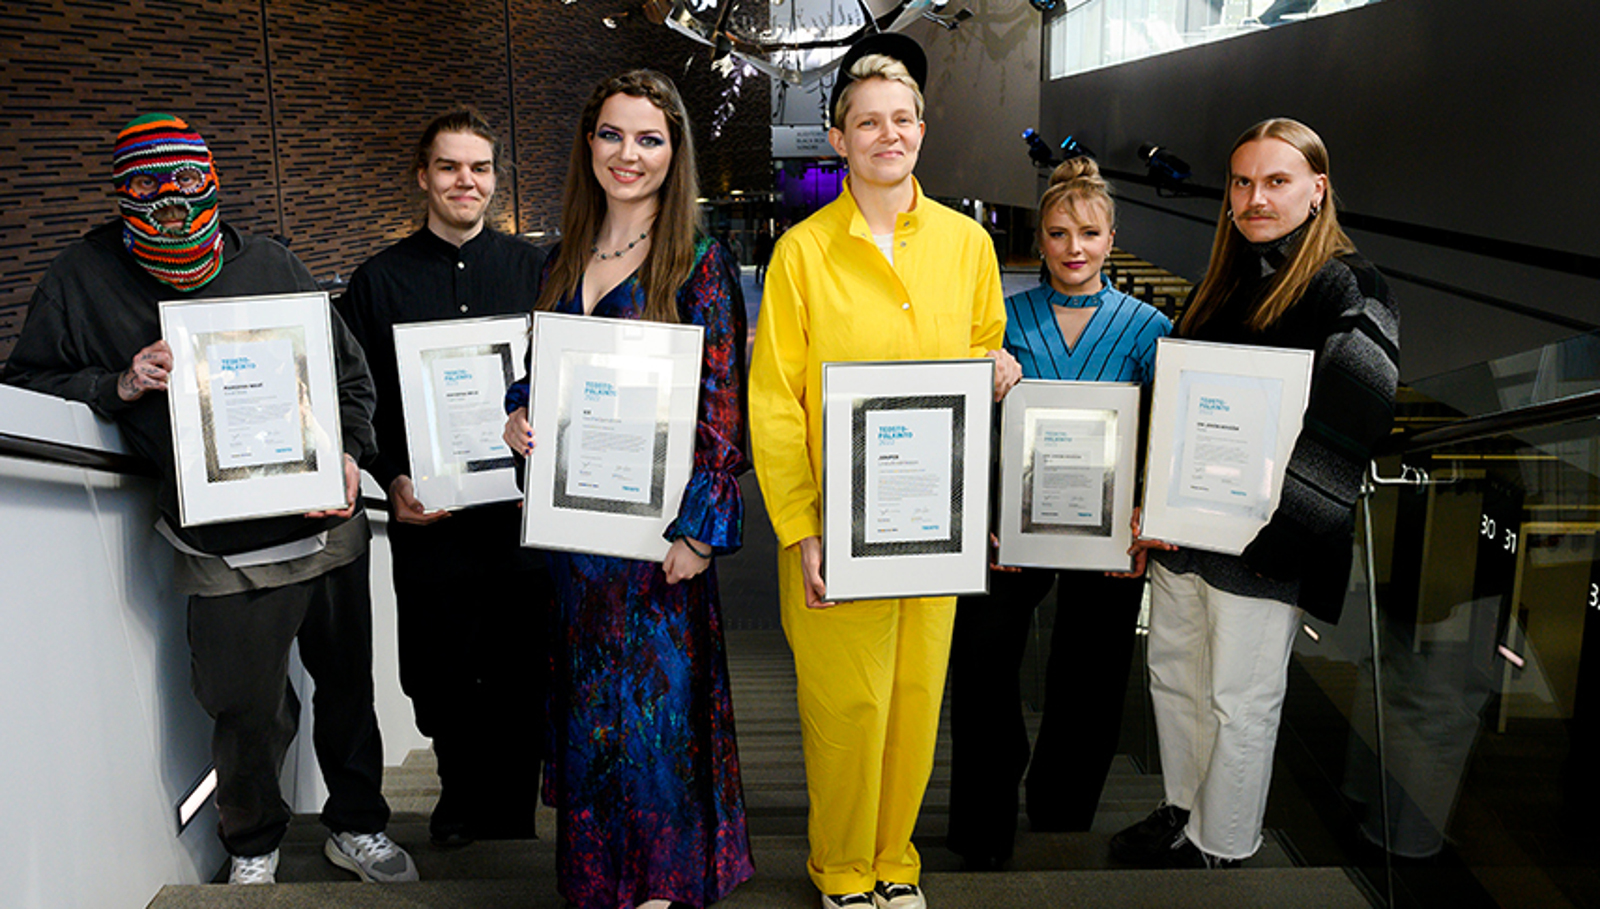 Kuvassa ovat Teosto-palkinnon saajat kuusi henkilöä palkintokunniakirjat kädessään.